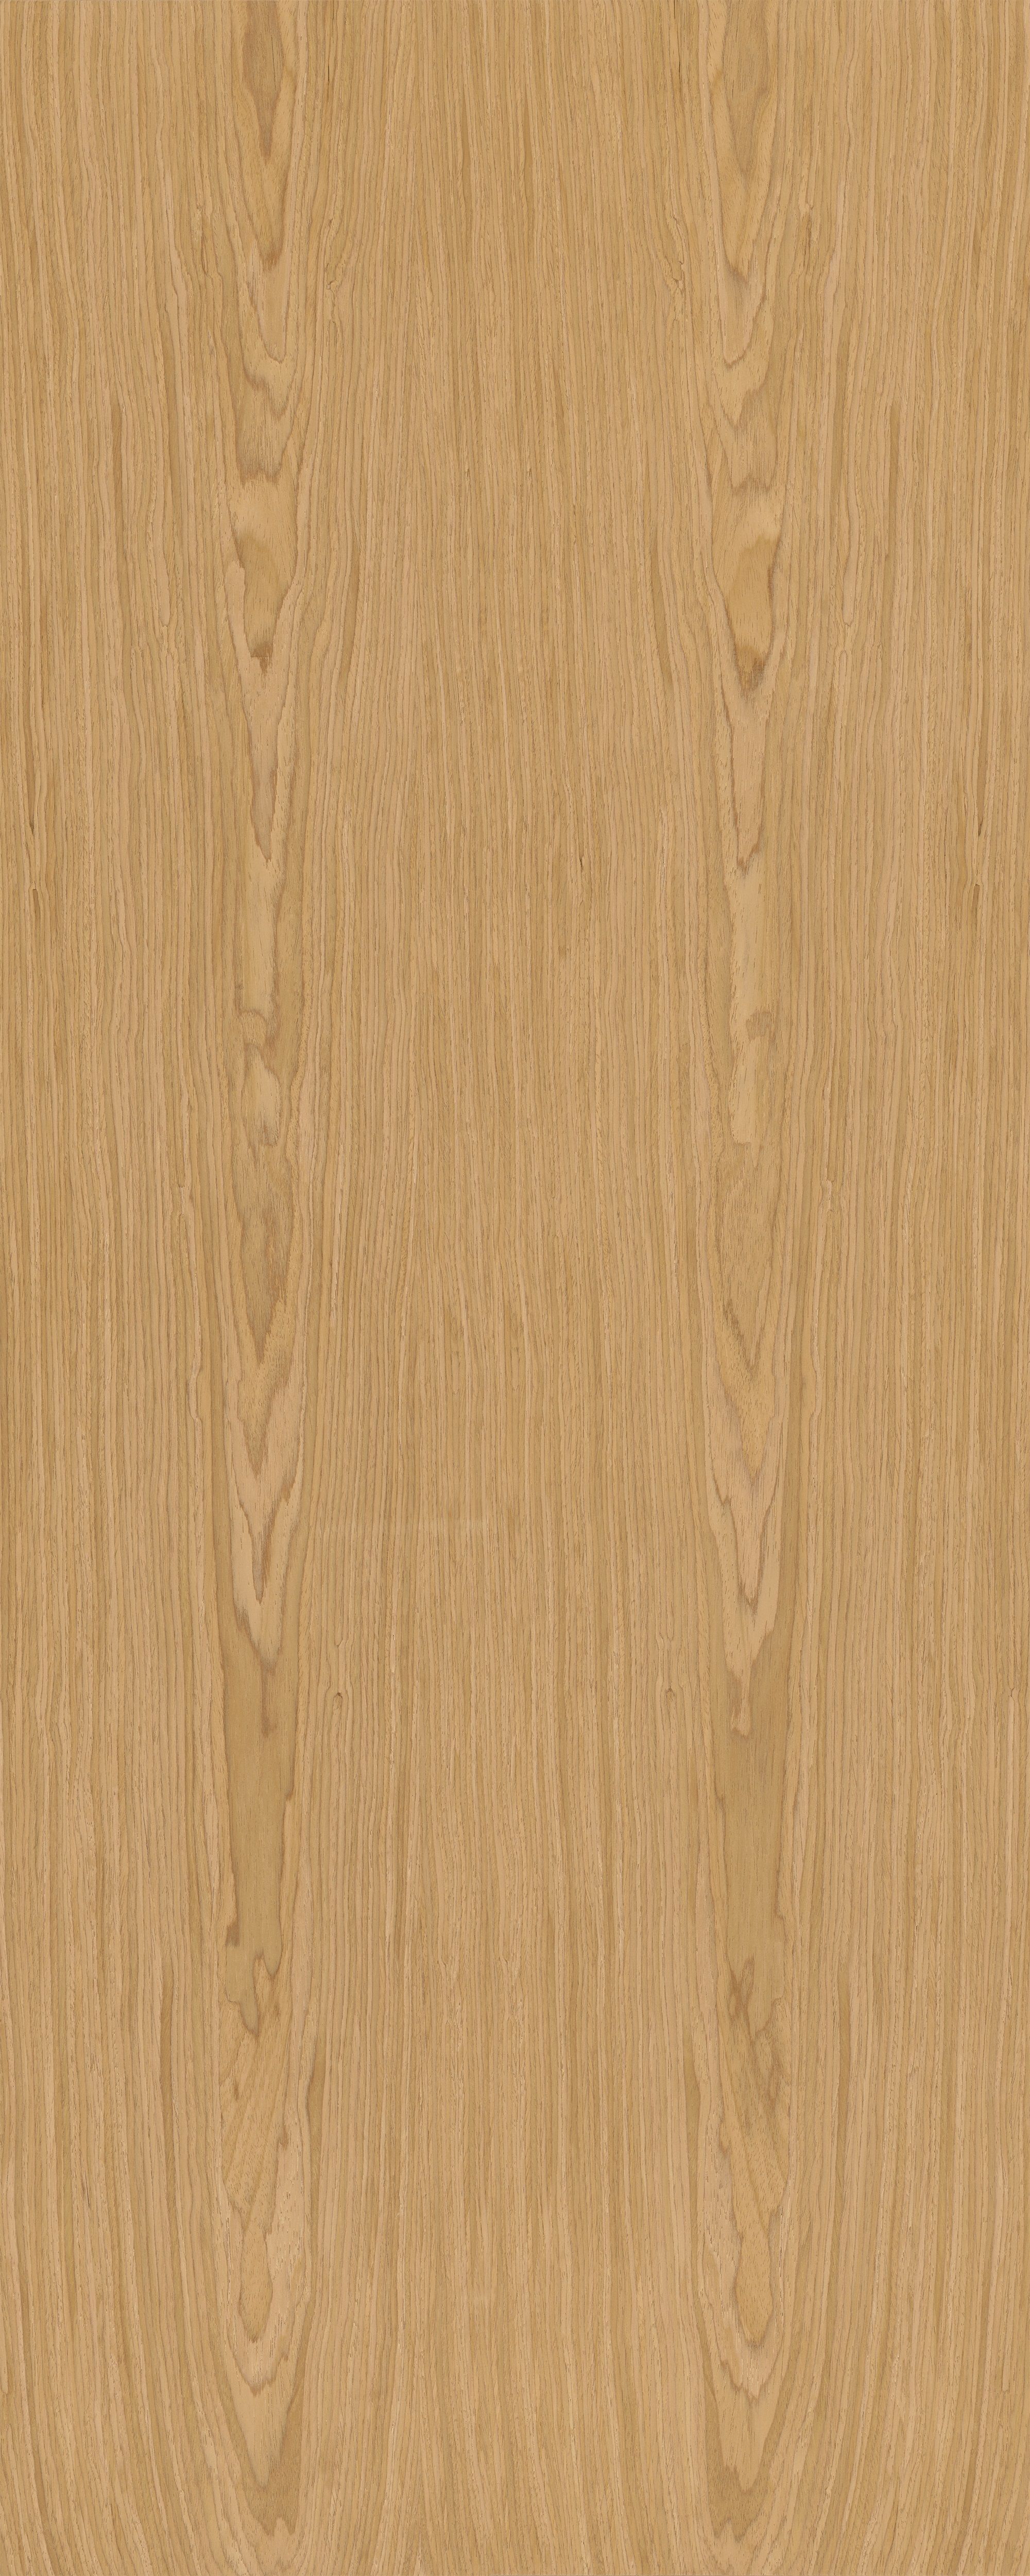 Интерьерная панель Oak 3000*1200*4 NT-19.1.1 Natural матовый